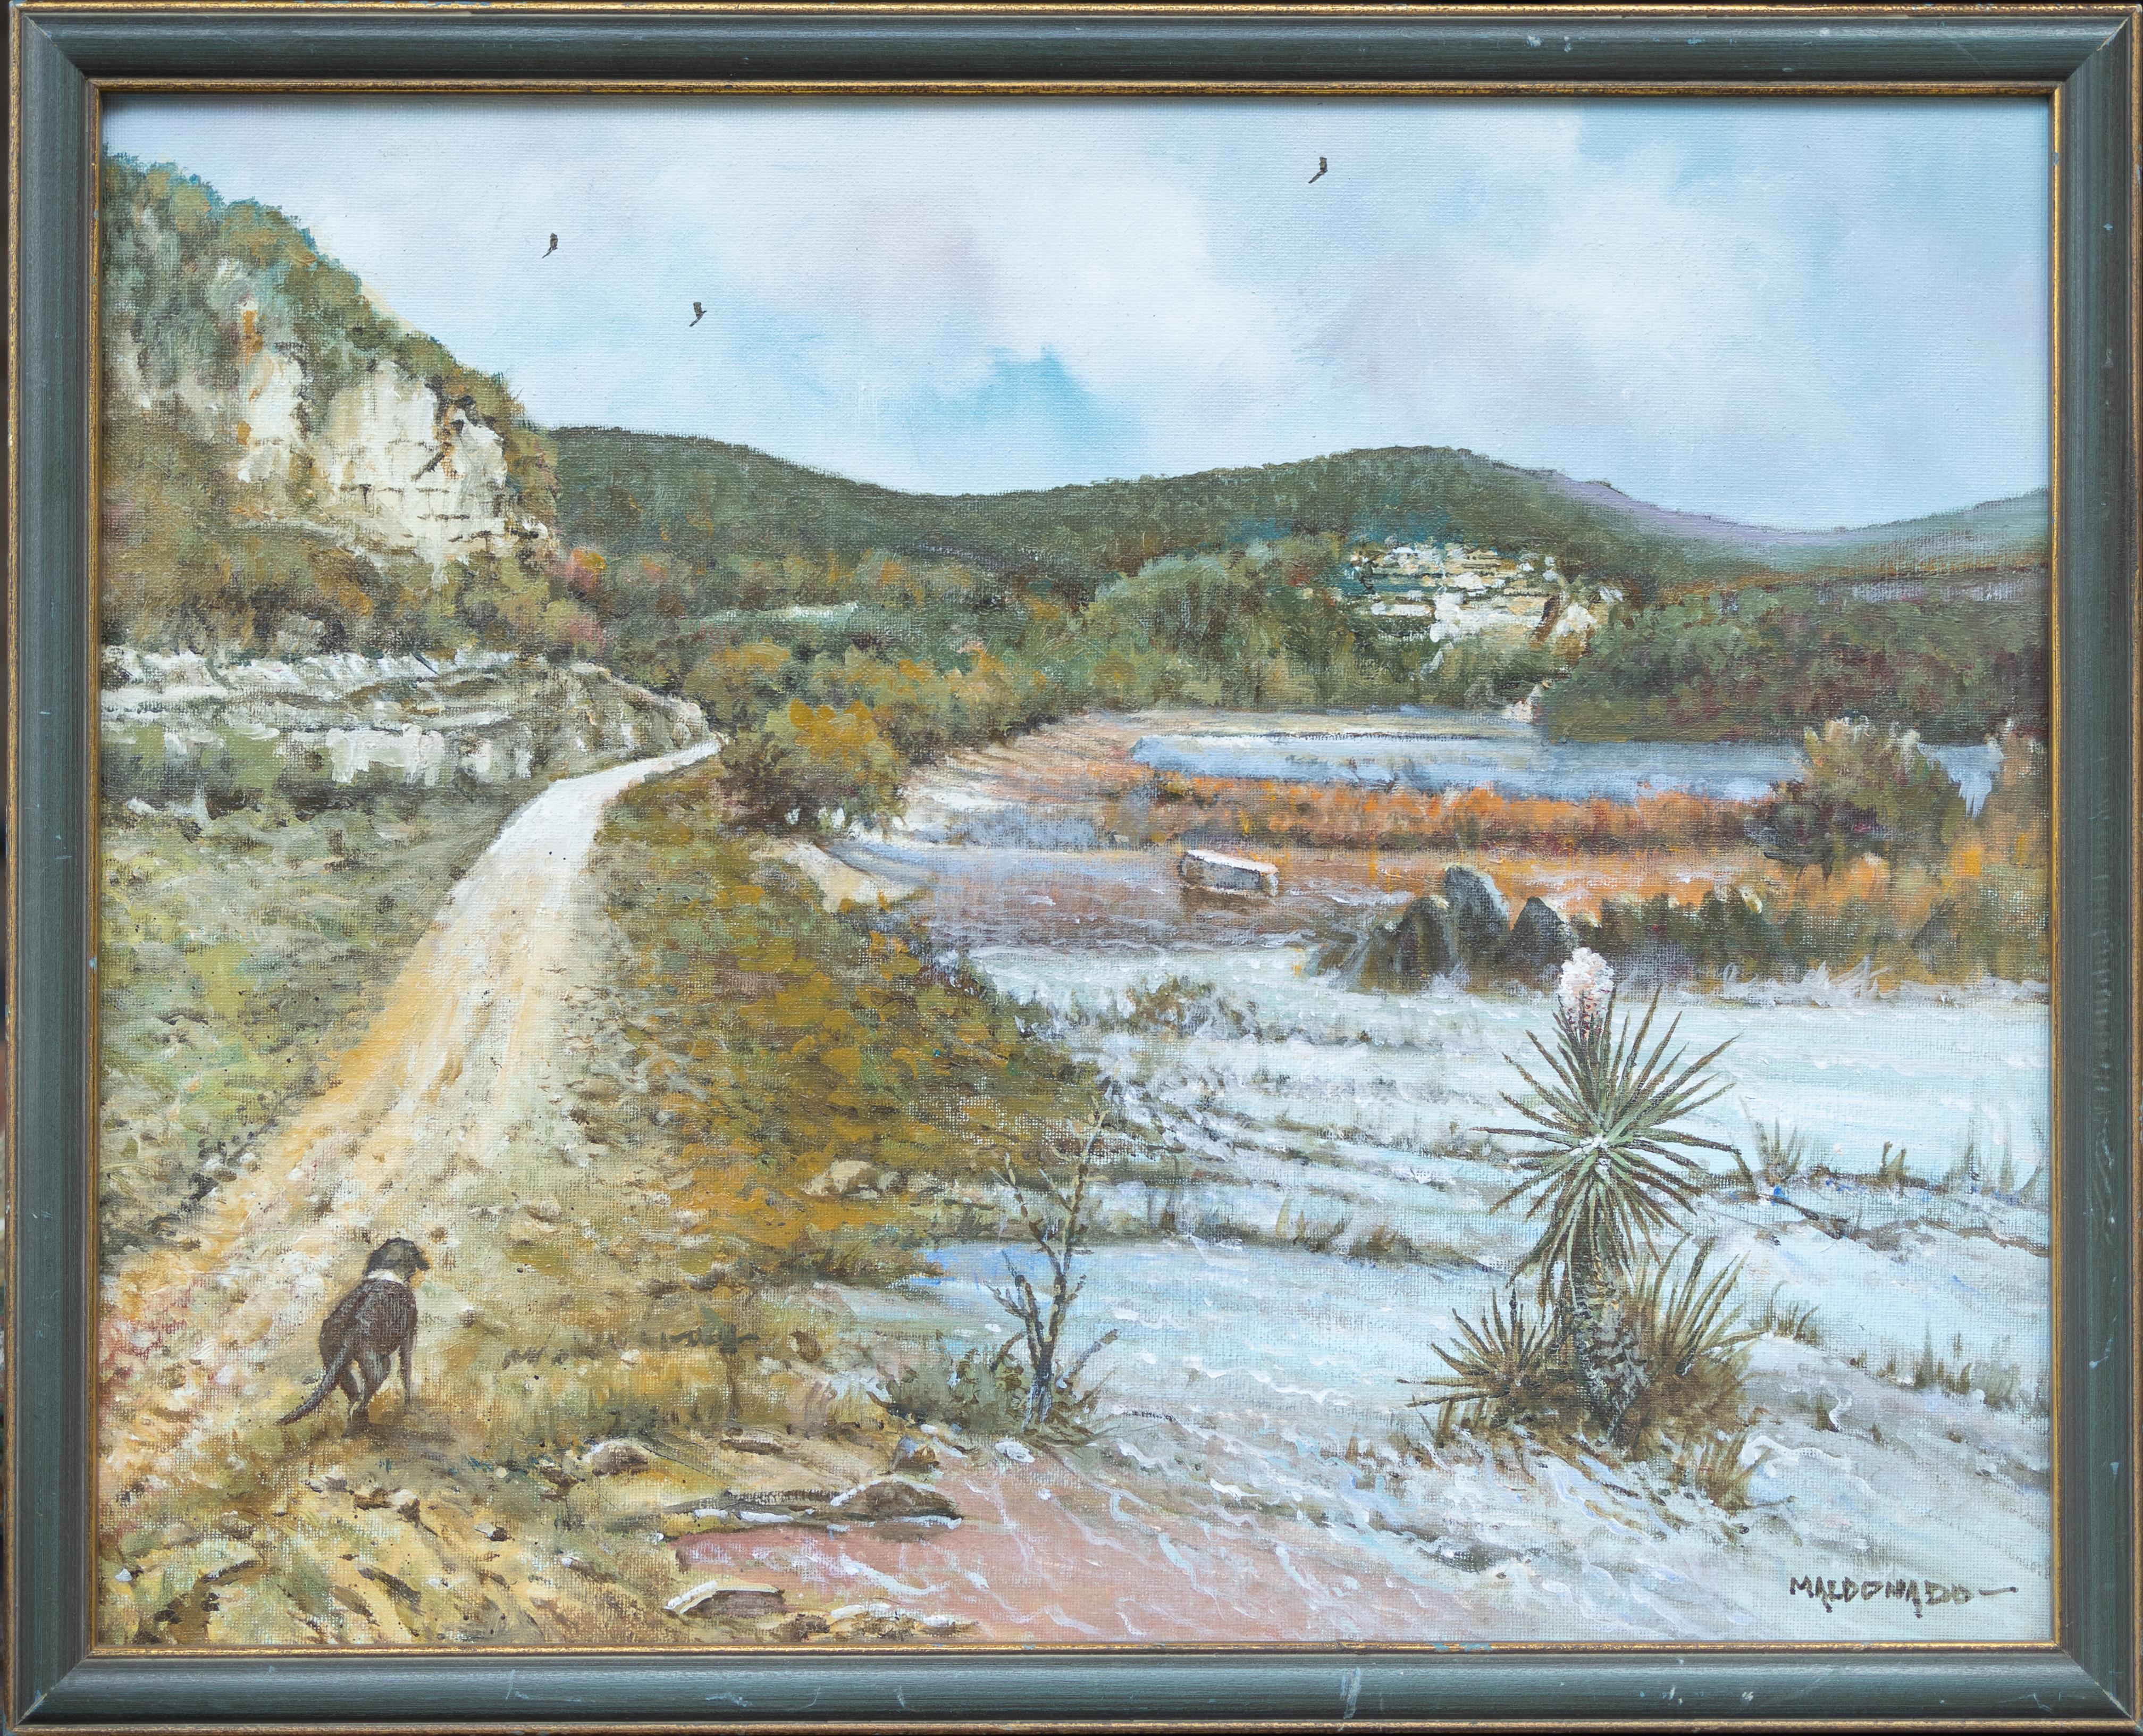 „Garner State Park“ texanische Hügellandschaft – Painting von Daniel Maldonado